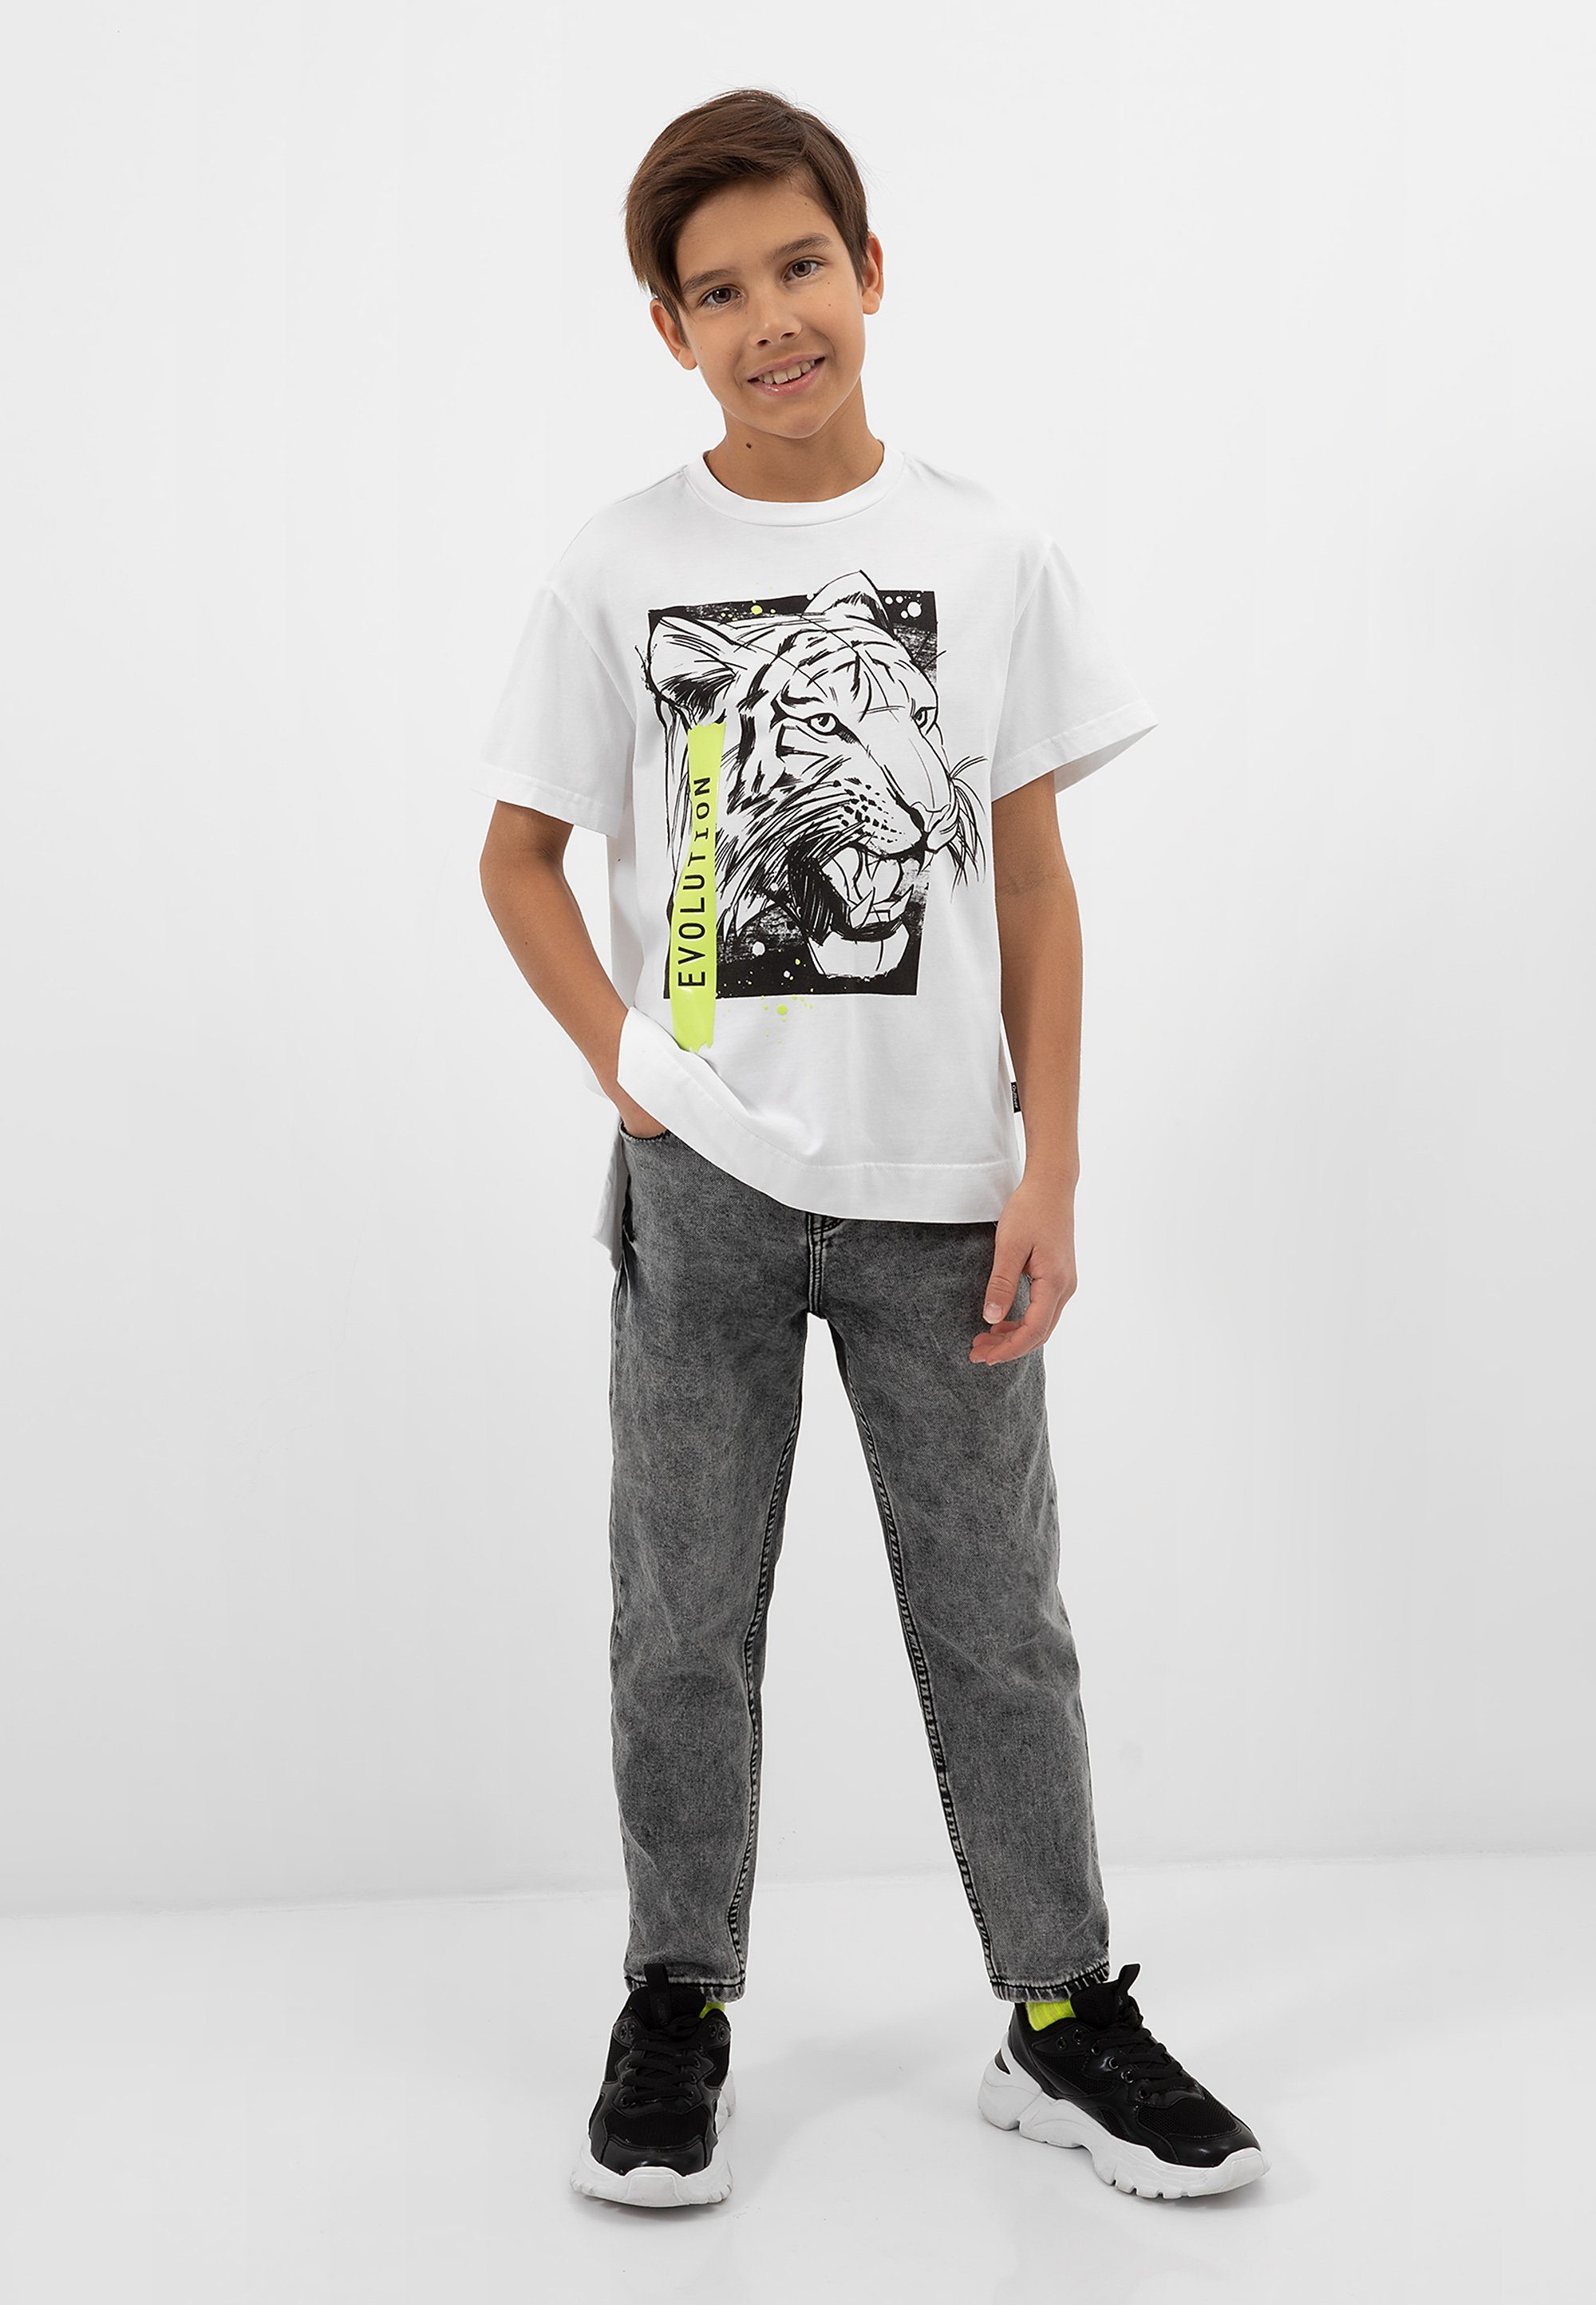 T-Shirt verlängerter Gulliver großem Rückseite, mit mit T-Shirt von Frontdruck Stylisches Gulliver